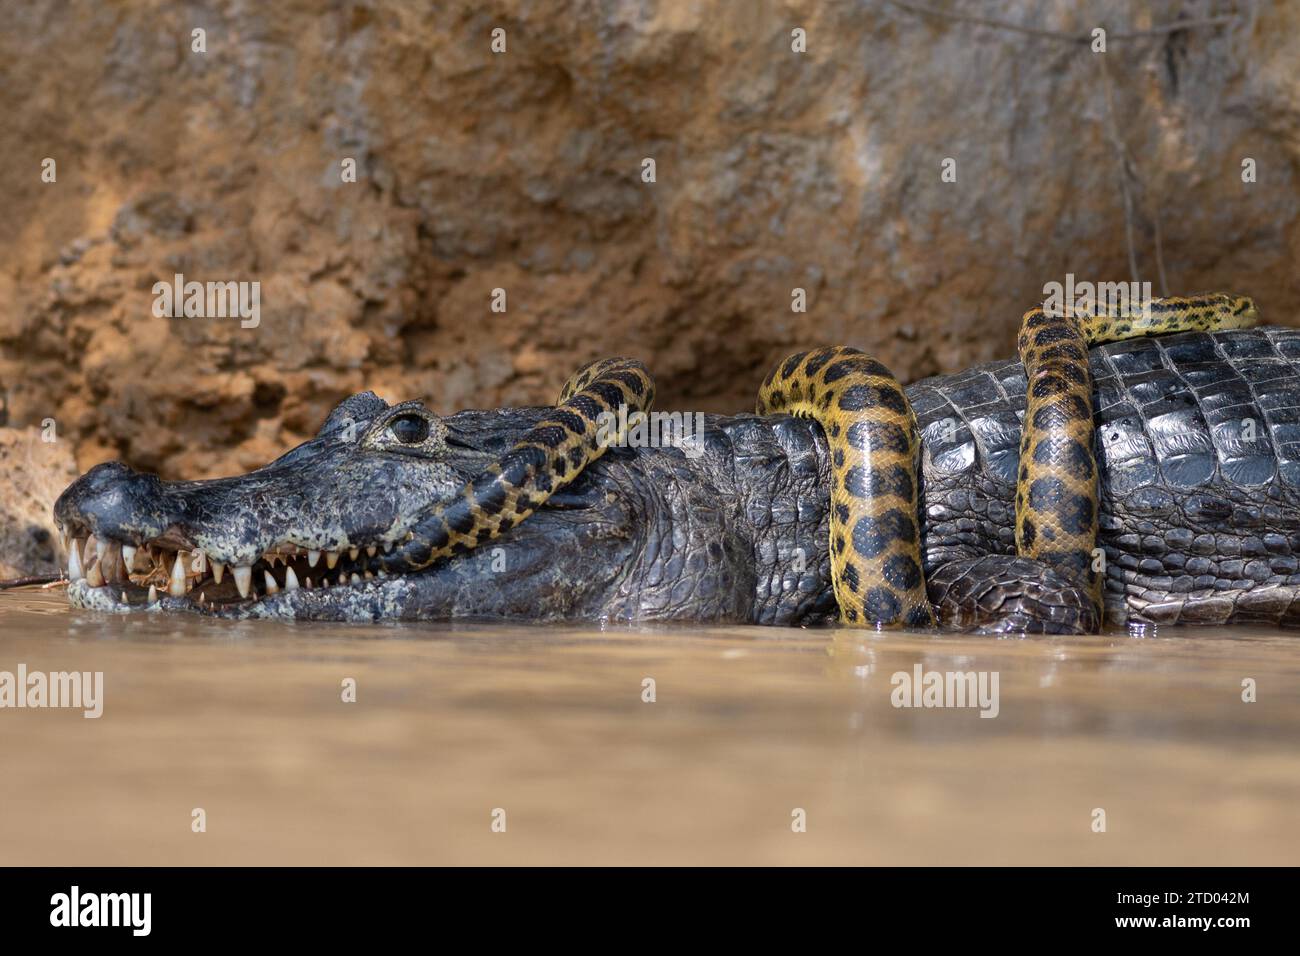 Anaconda umwickelt um den Alligator BRASILIEN SPANNENDE Bilder zeigen einen Kaiman-Alligator, der eine gelbe Anaconda wie eine Krawatte trägt. Die 1,2 Meter lange Ana Stockfoto